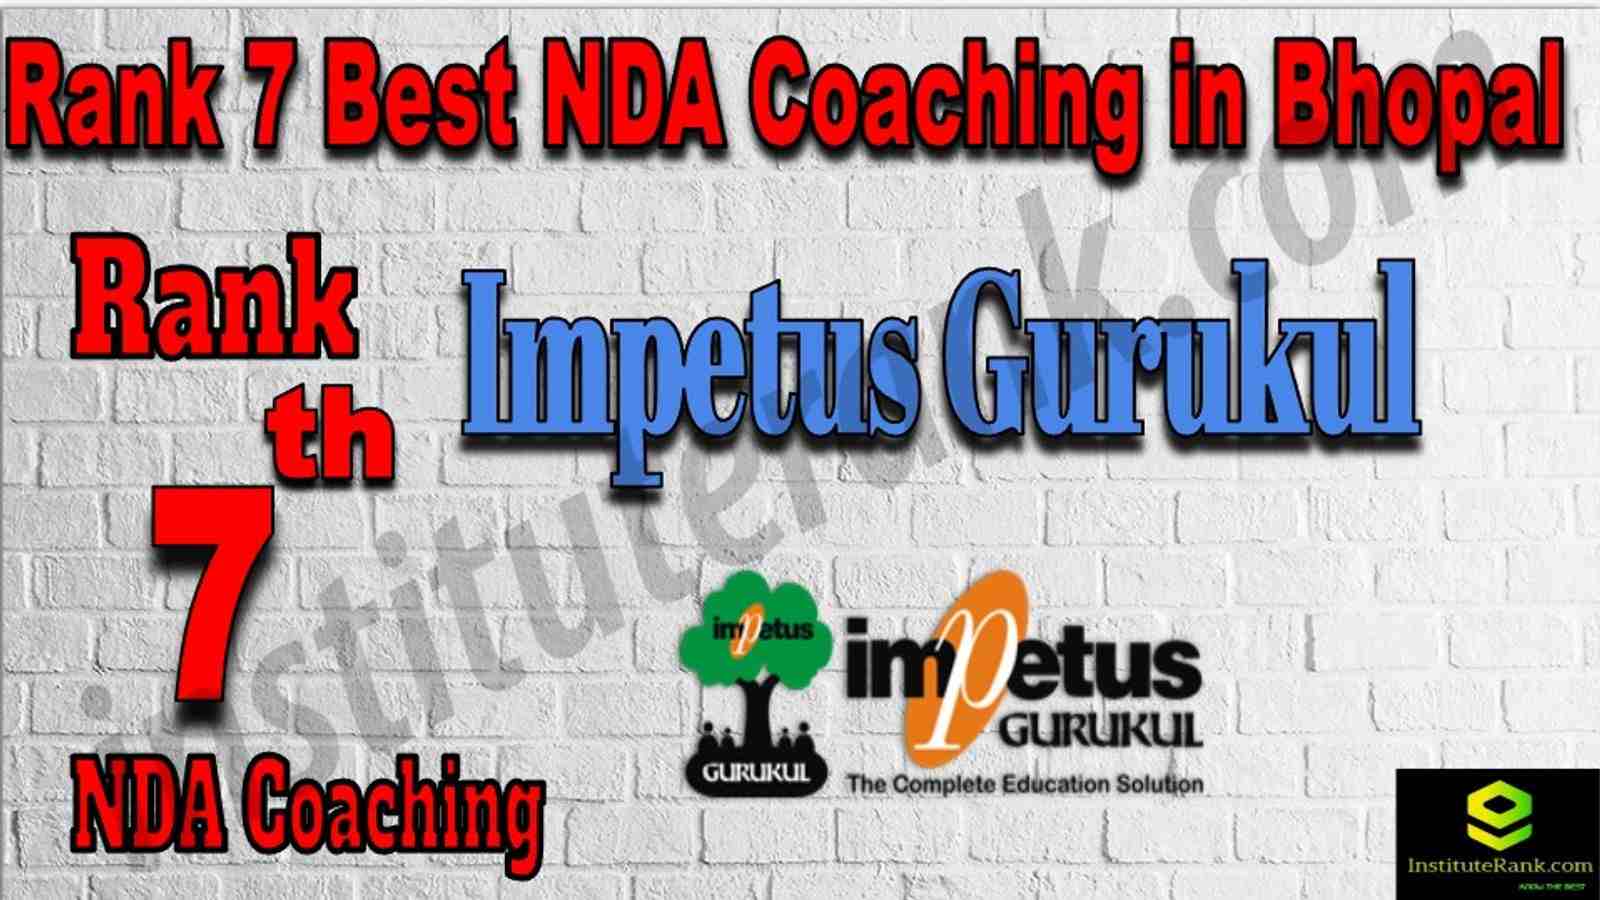 Rank 7. NDA Coaching in Bhopal